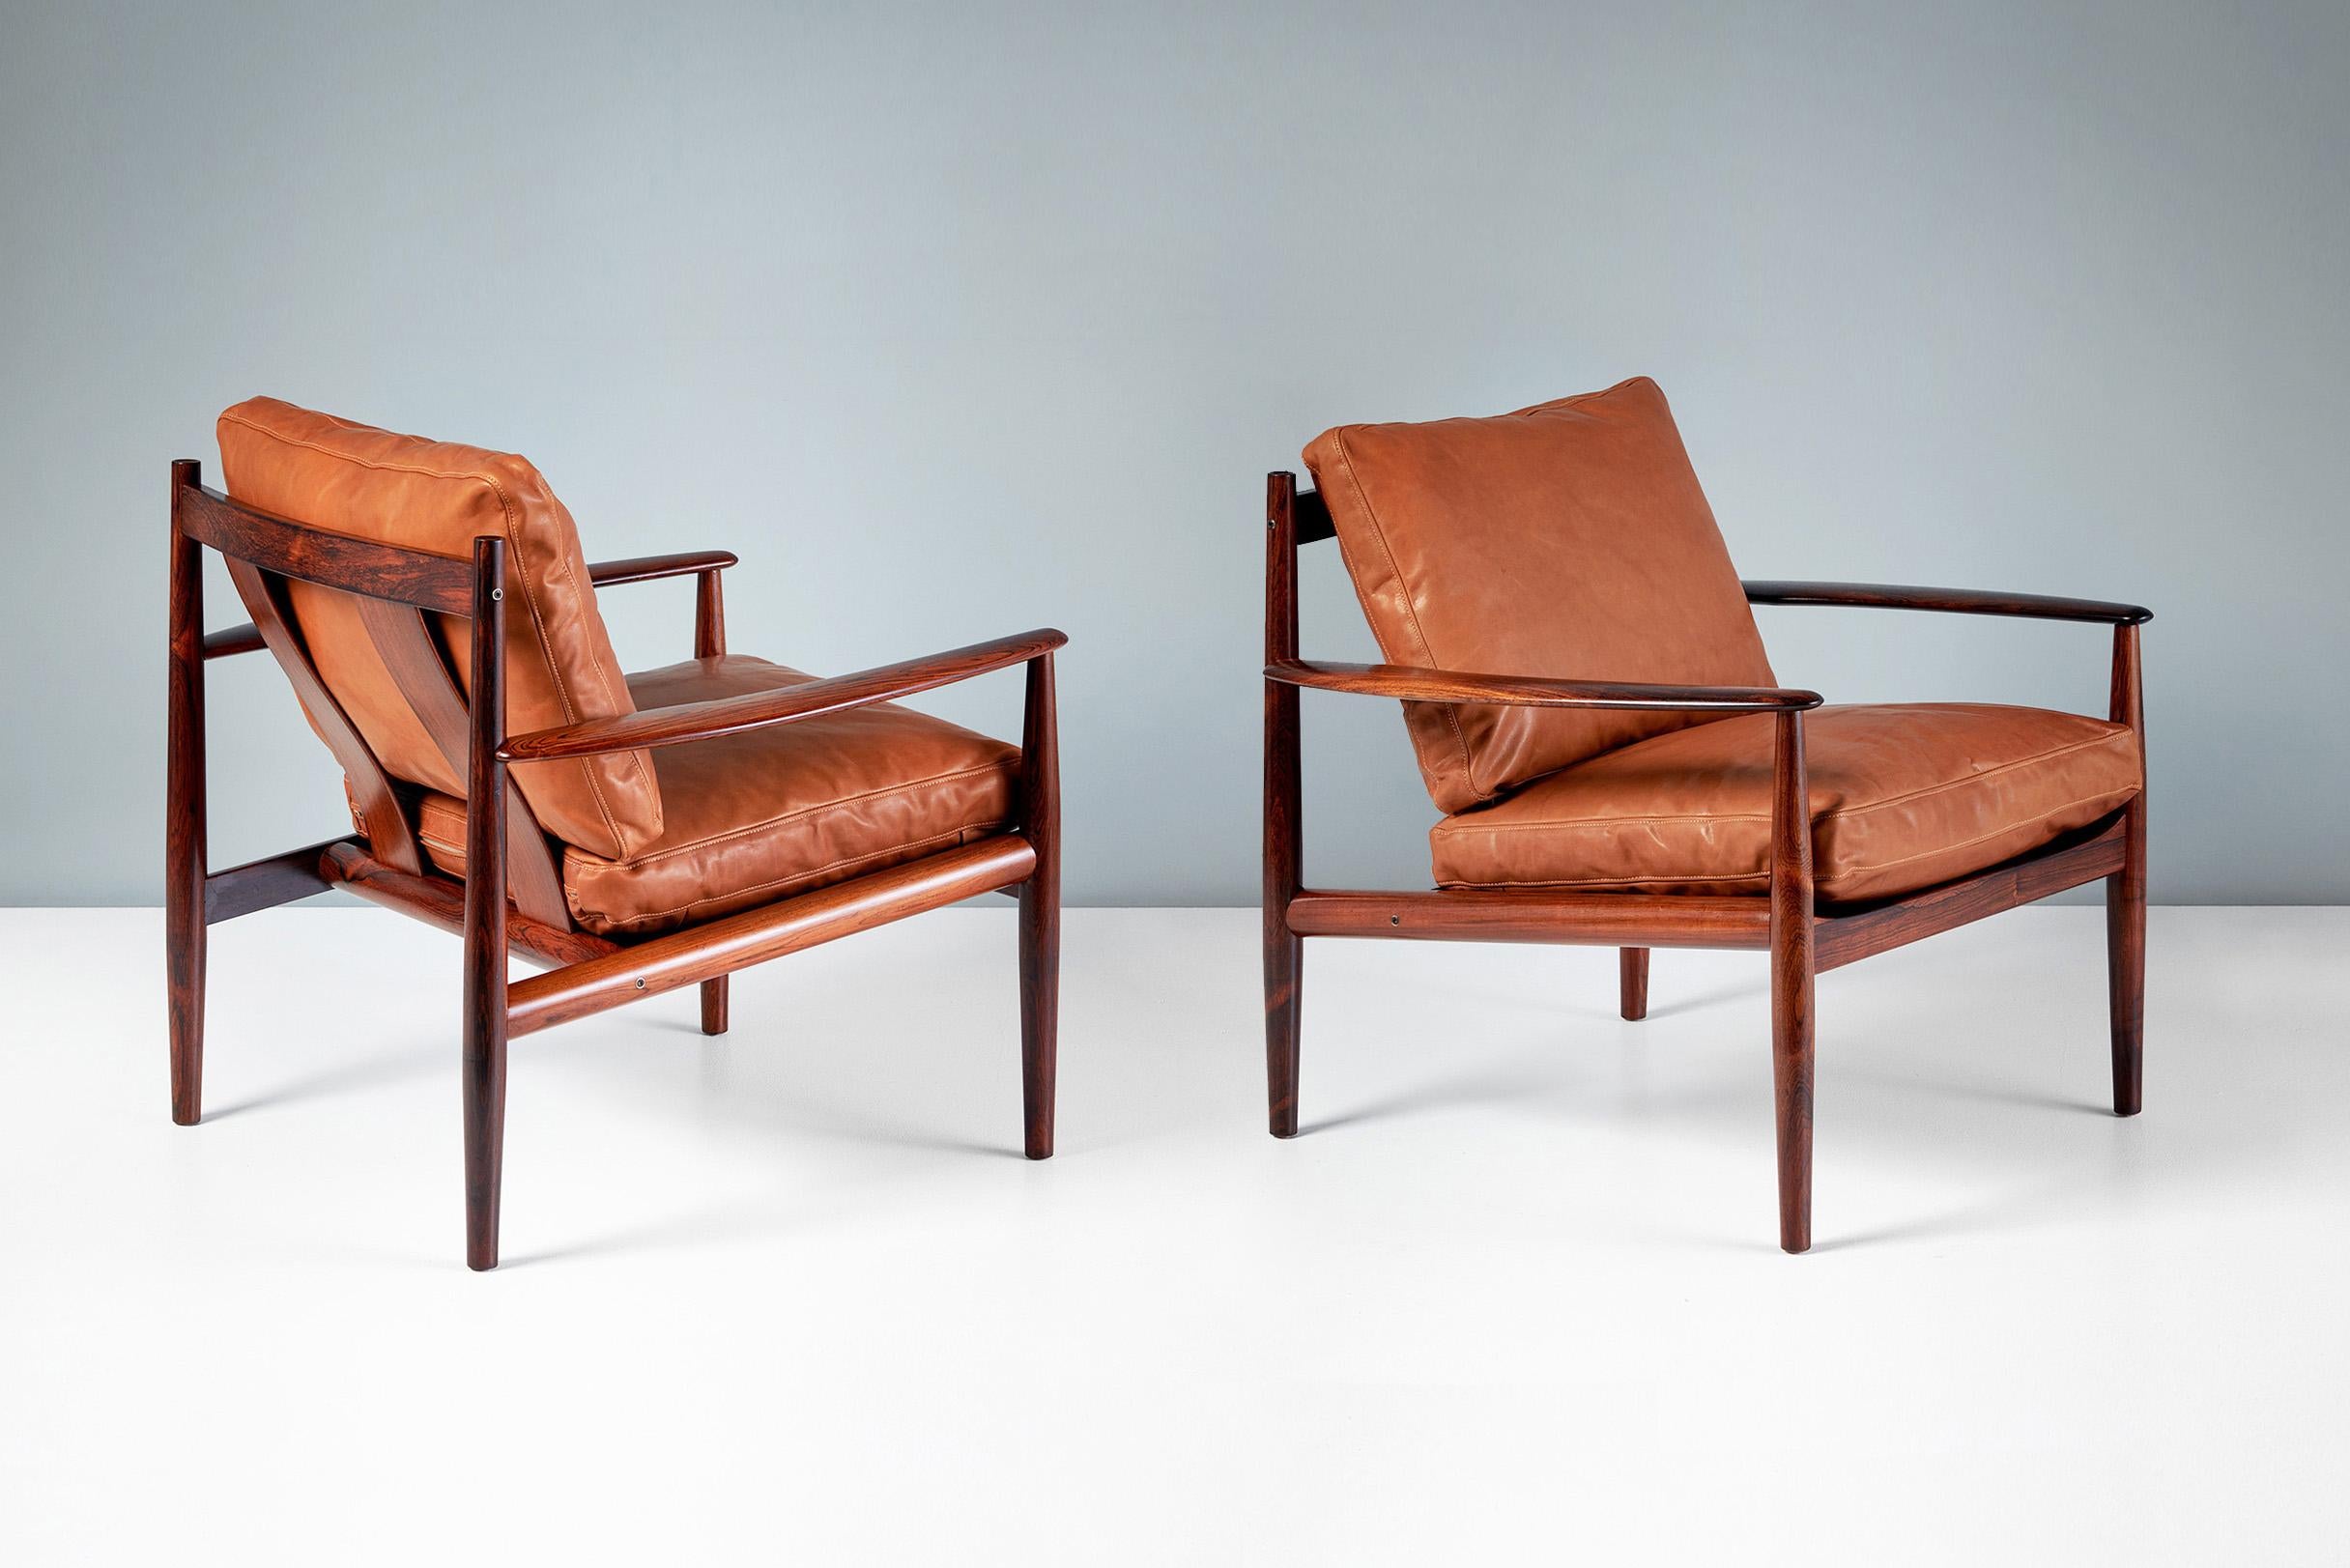 Grete Jalk - Paire de chaises longues modèle 128, c1963

Paire de chaises longues en bois de rose produites par France & Son, Danemark, vers les années 1960. Les nouveaux coussins en plumes ont été recouverts de cuir aniline de première qualité, de